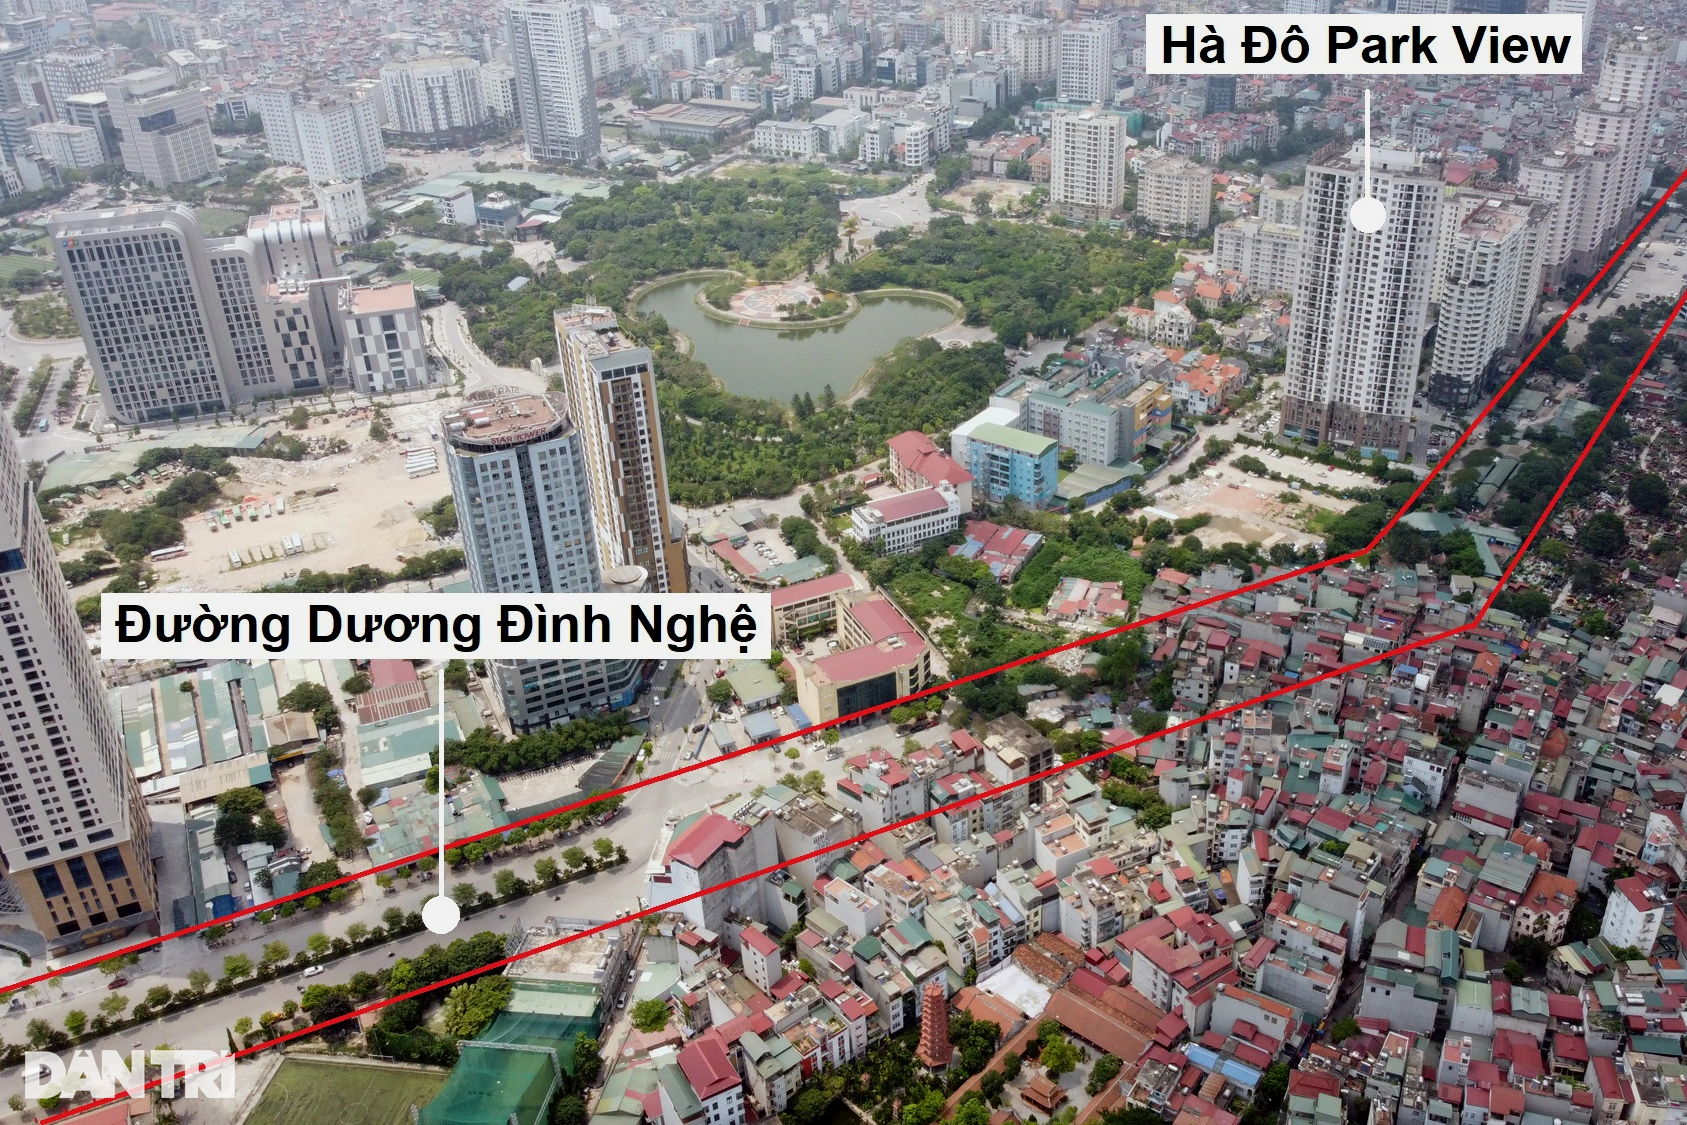 Toàn cảnh đường vành đai 2,5 đi qua nhiều khu đô thị ở Hà Nội - 9